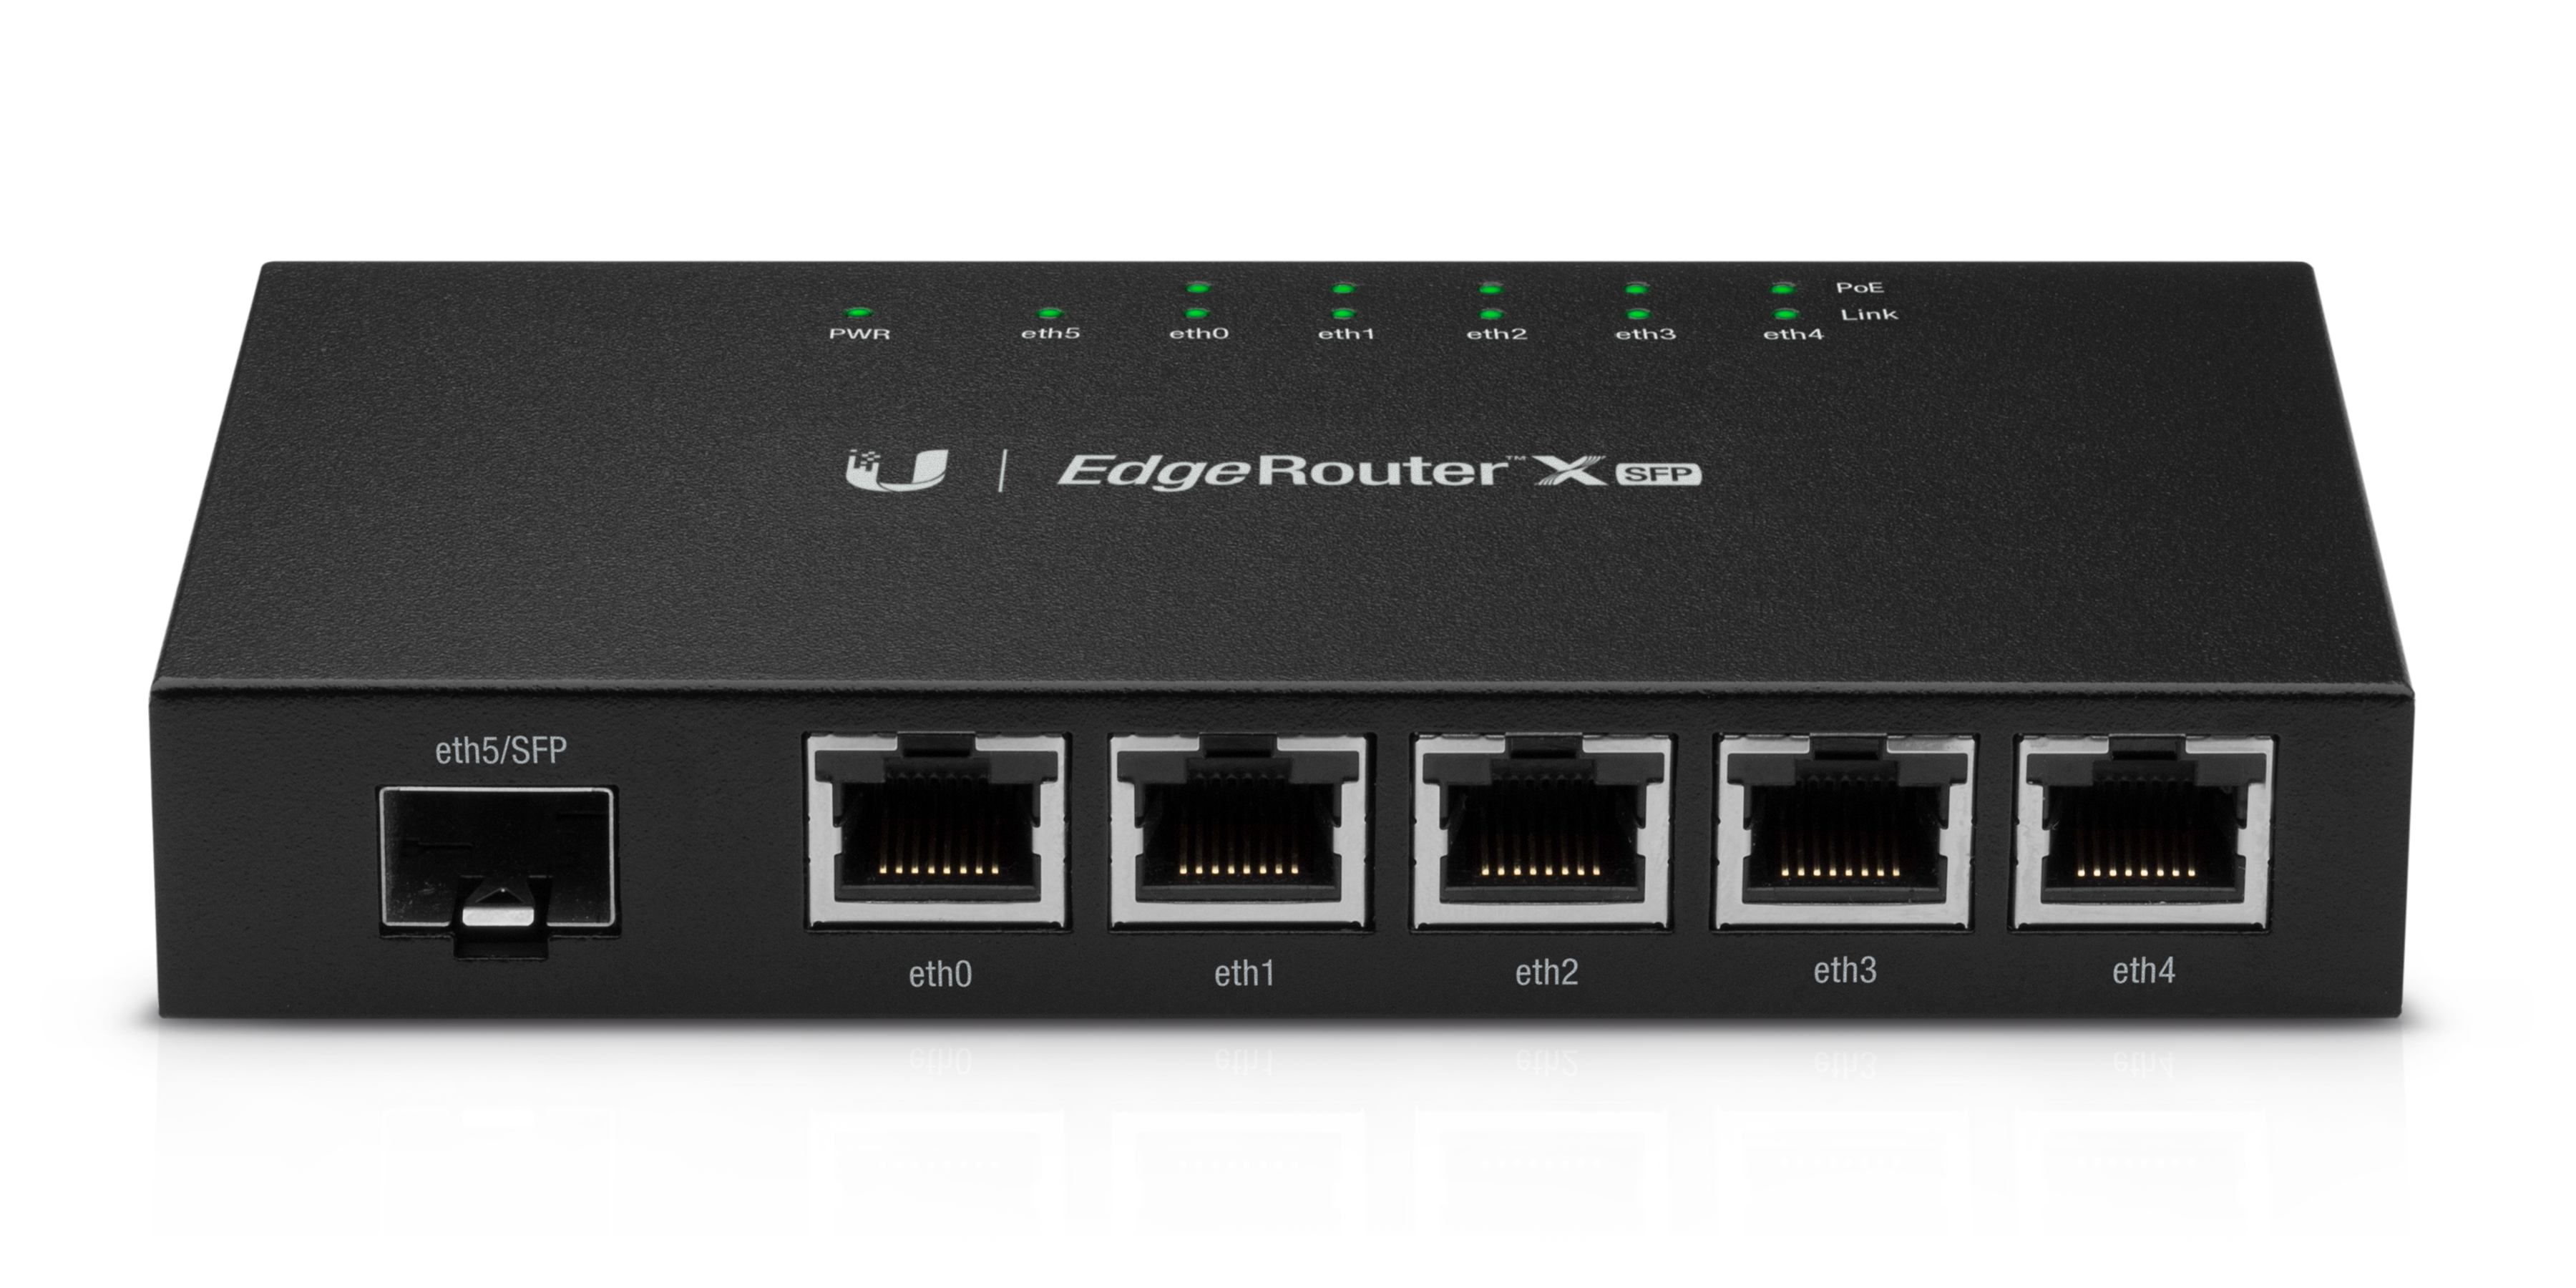 Ubiquiti  EdgeRouter X SFP de 5 puertos Gigabit + 1 puerto SFP con funciones avanzadas de ruteo